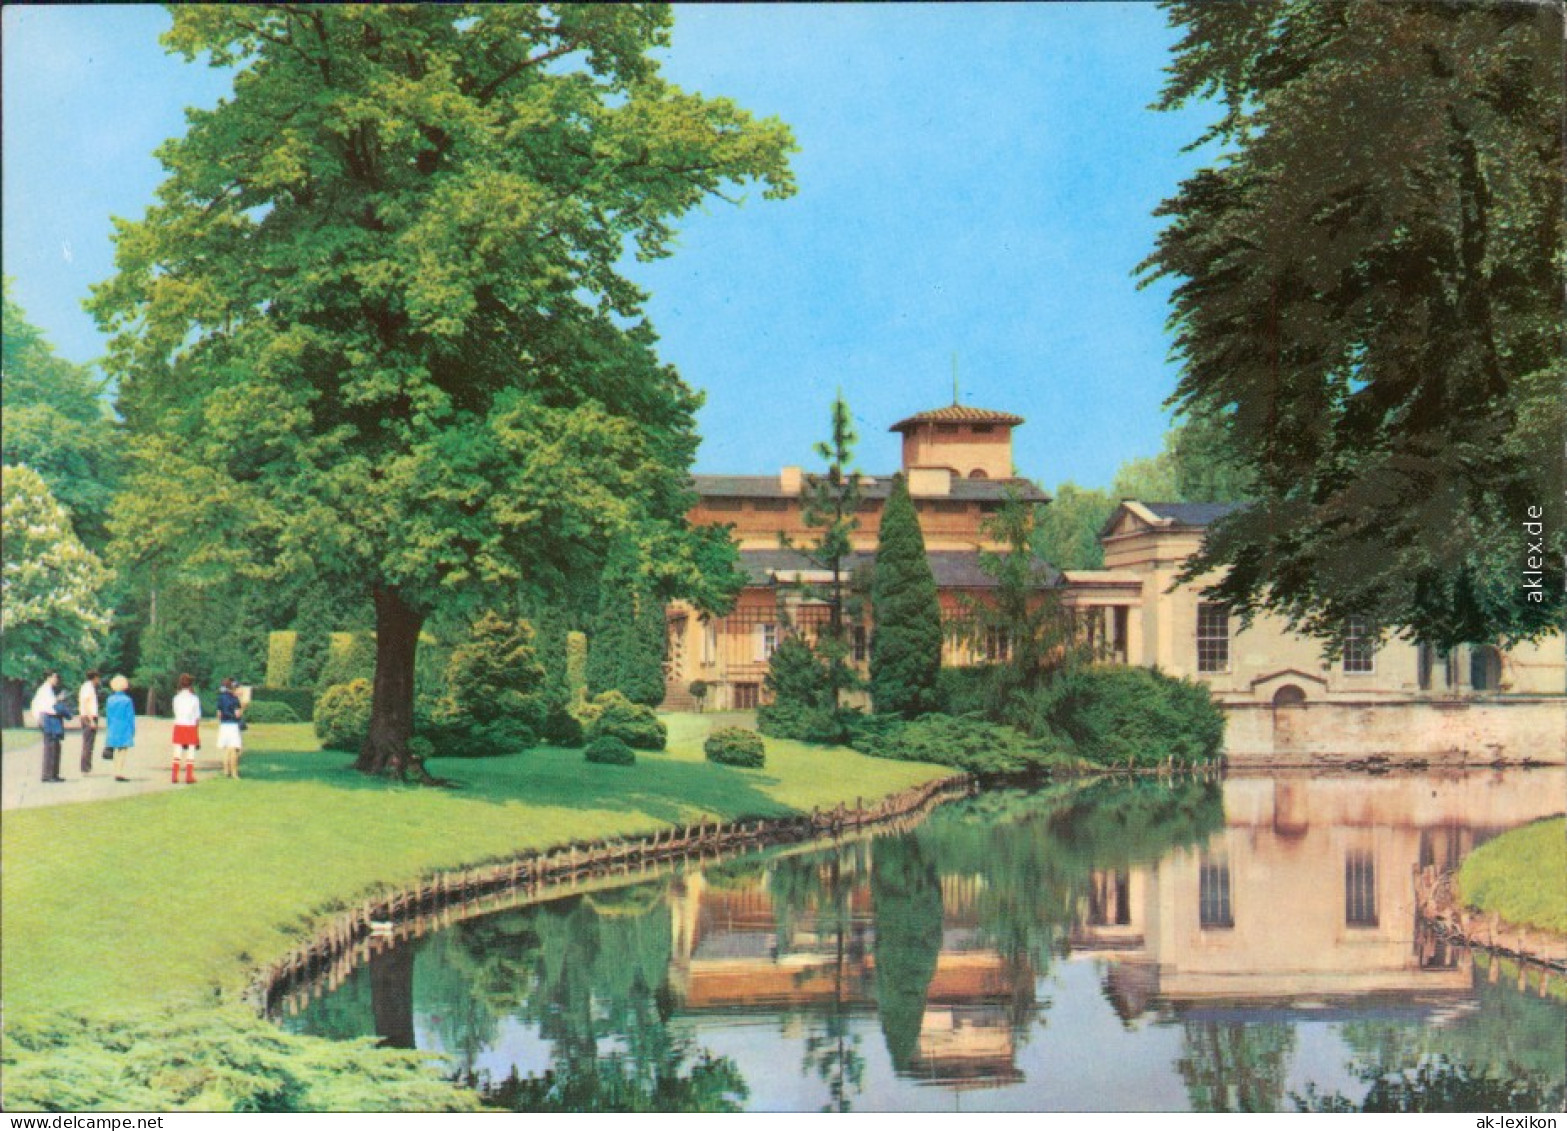 Potsdam Römische Bäder Im Schlosspark Sanssouci 1973 - Potsdam